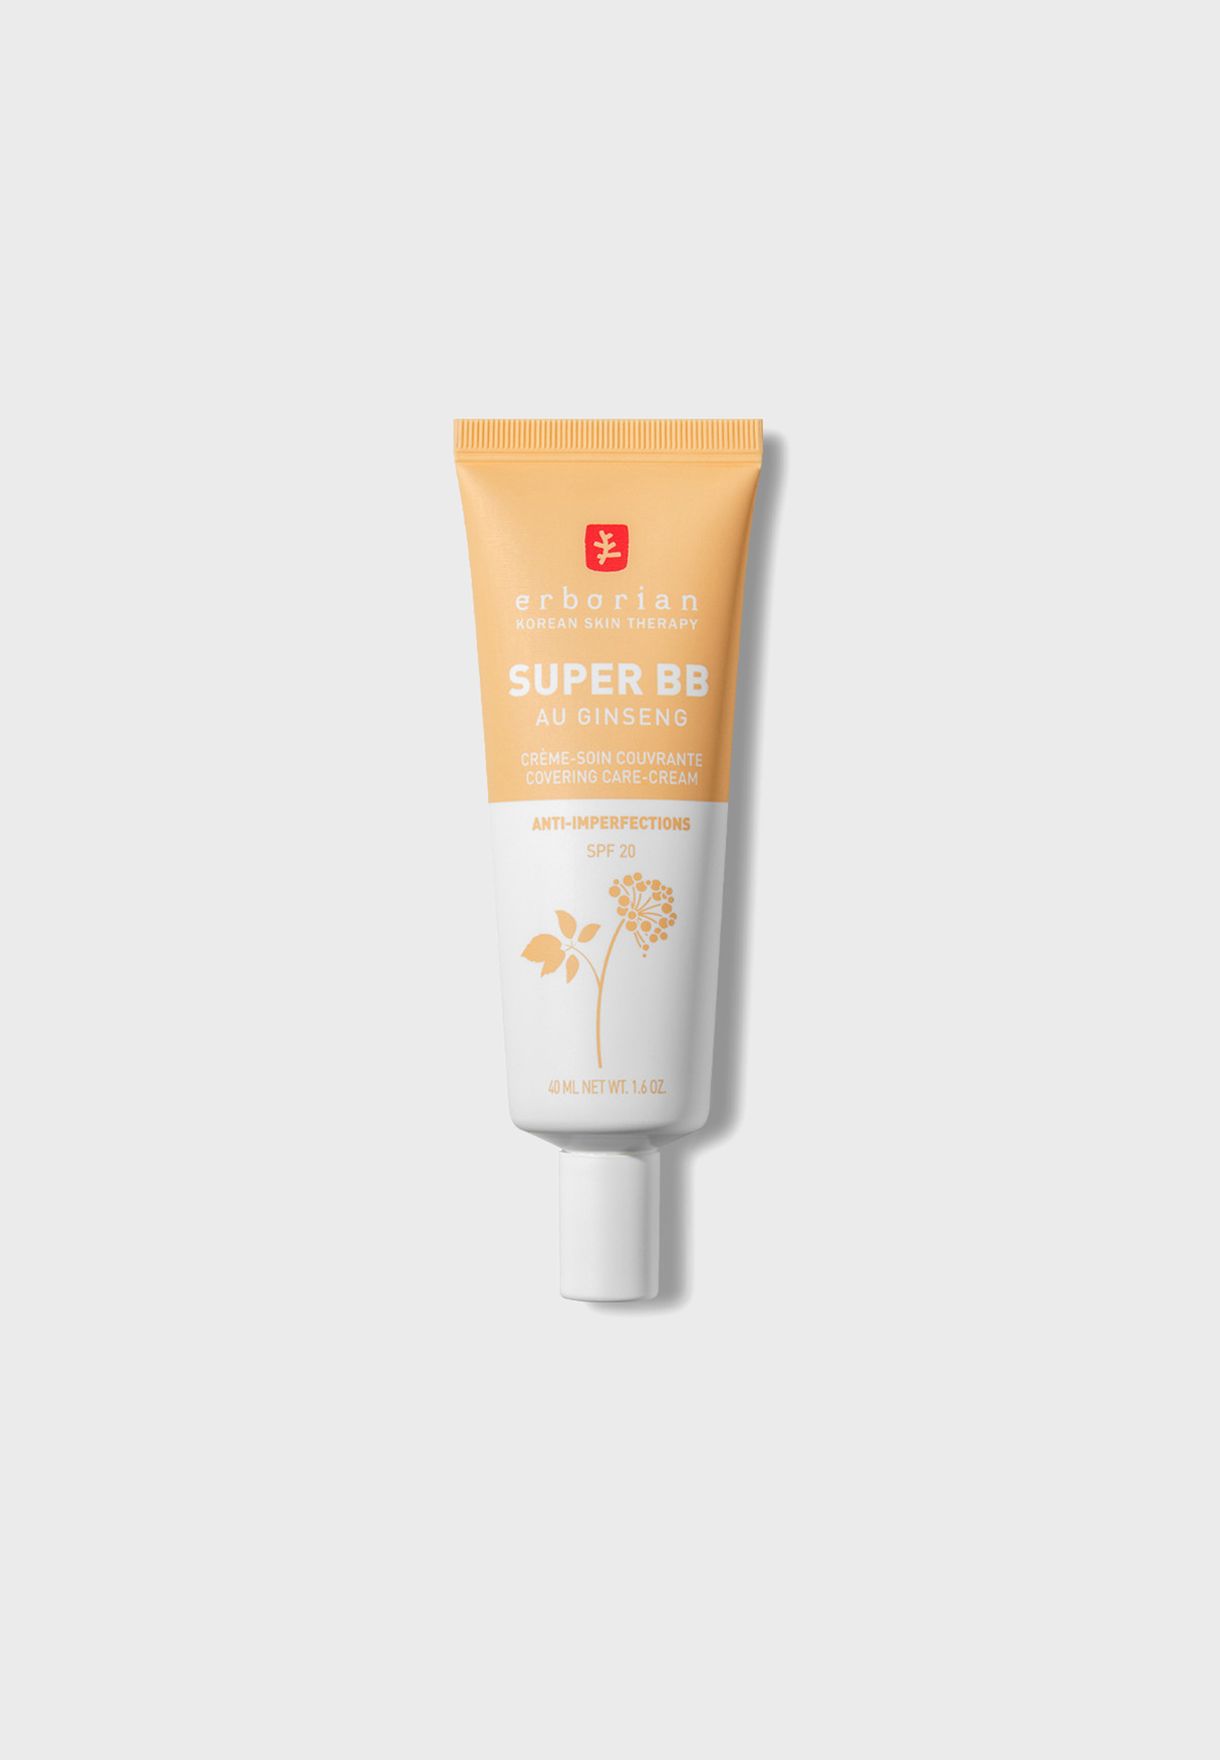 Super Bb - Full Coverage Bb Cream For Acne Prone Skin Nude 40Ml